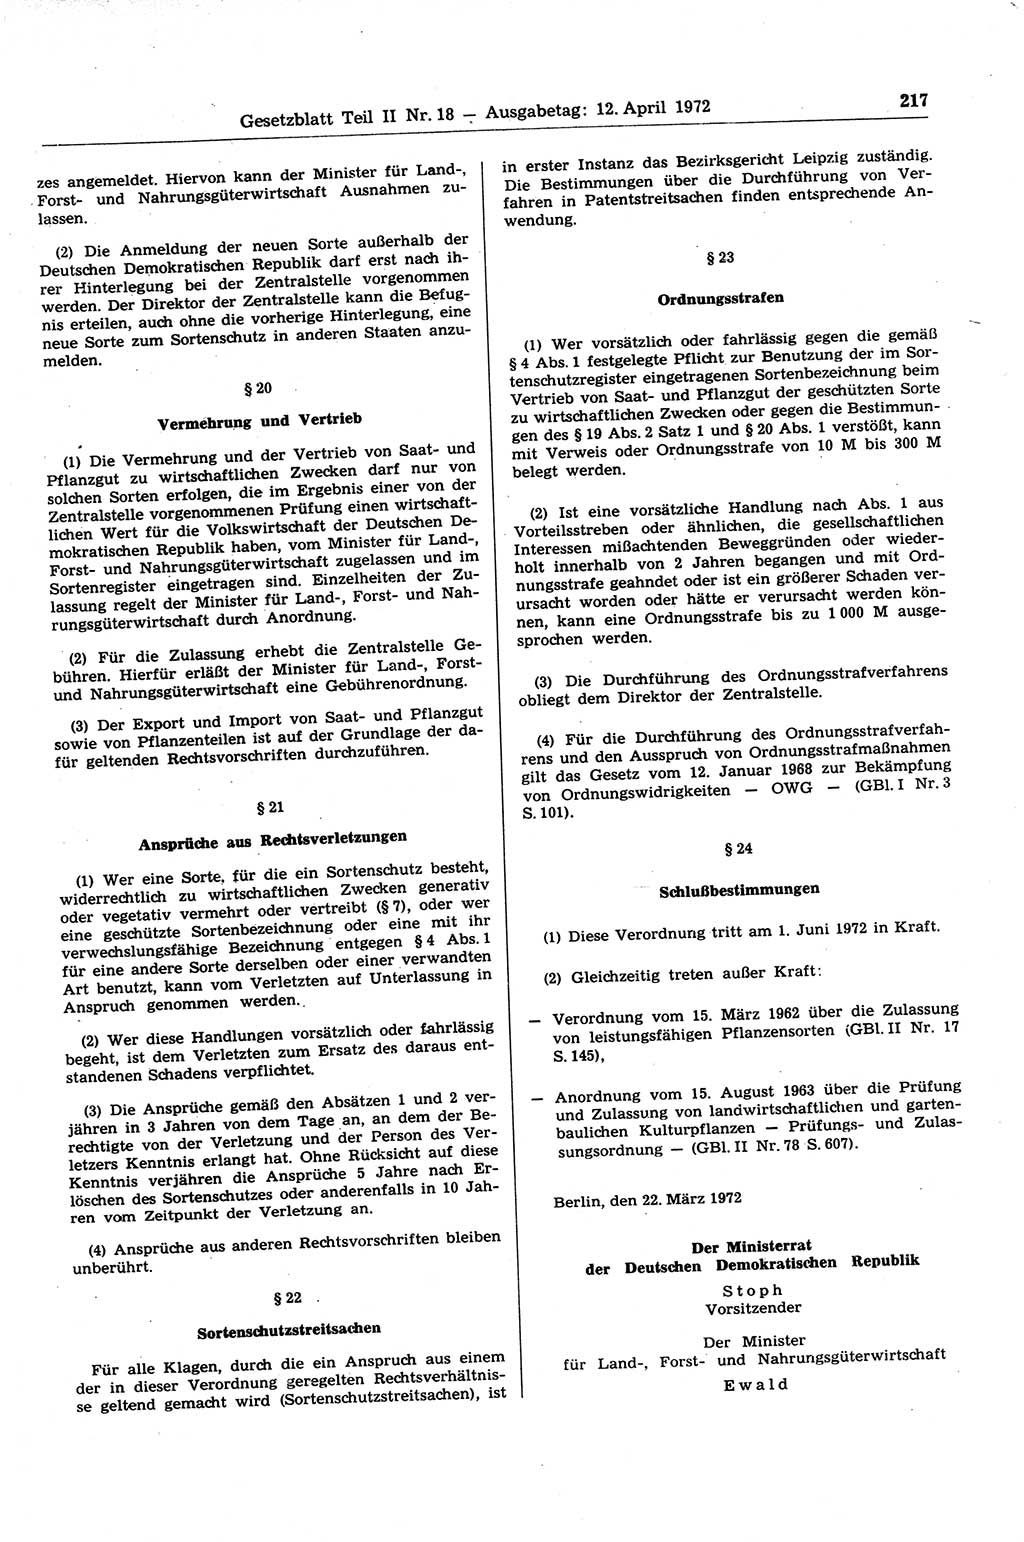 Gesetzblatt (GBl.) der Deutschen Demokratischen Republik (DDR) Teil ⅠⅠ 1972, Seite 217 (GBl. DDR ⅠⅠ 1972, S. 217)